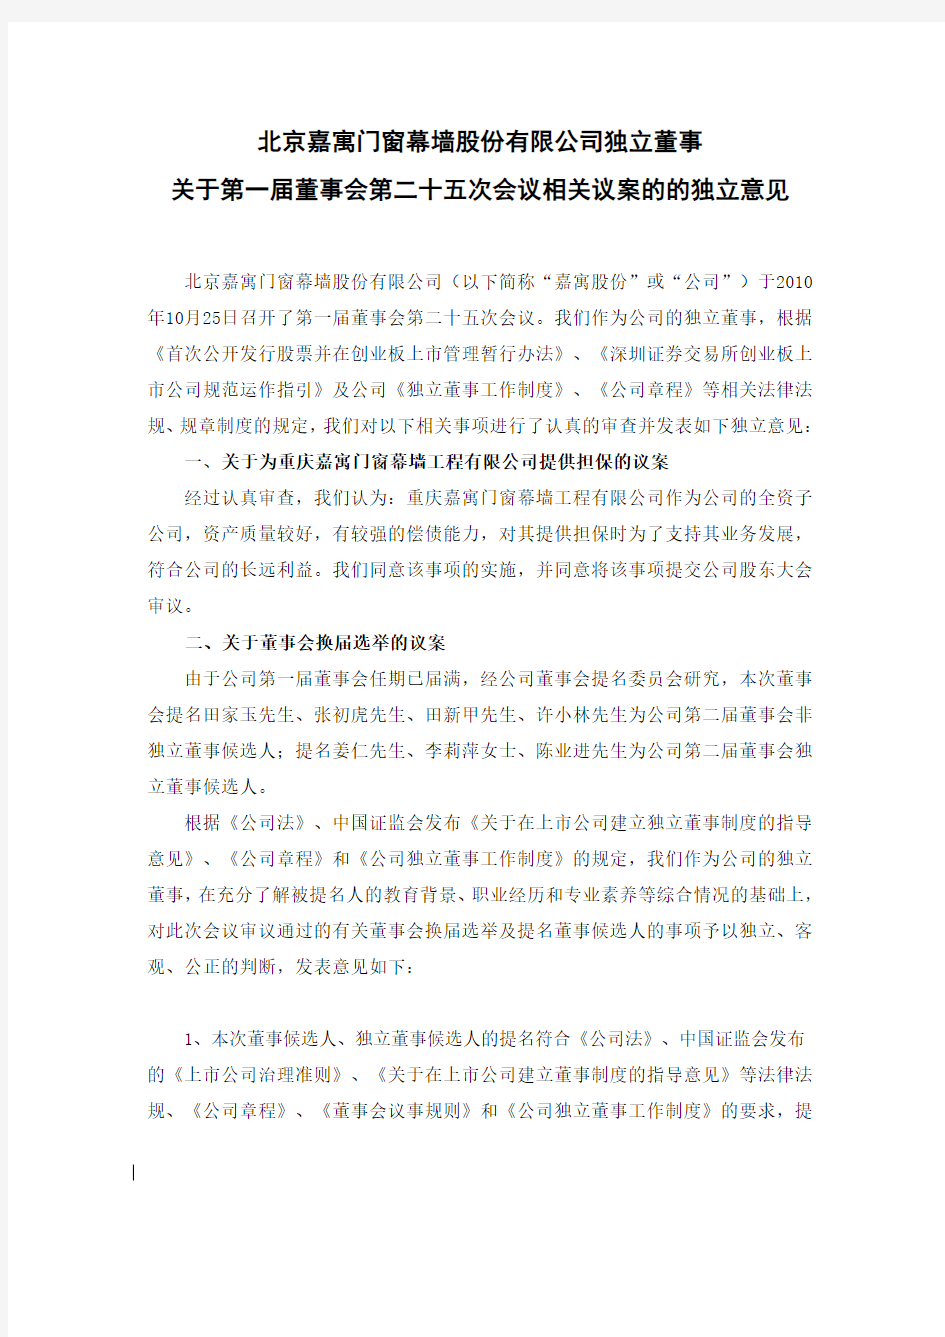 北京嘉寓门窗幕墙股份有限公司独立董事关于第一届董事会第二十五次会议相关议案的的独立意见